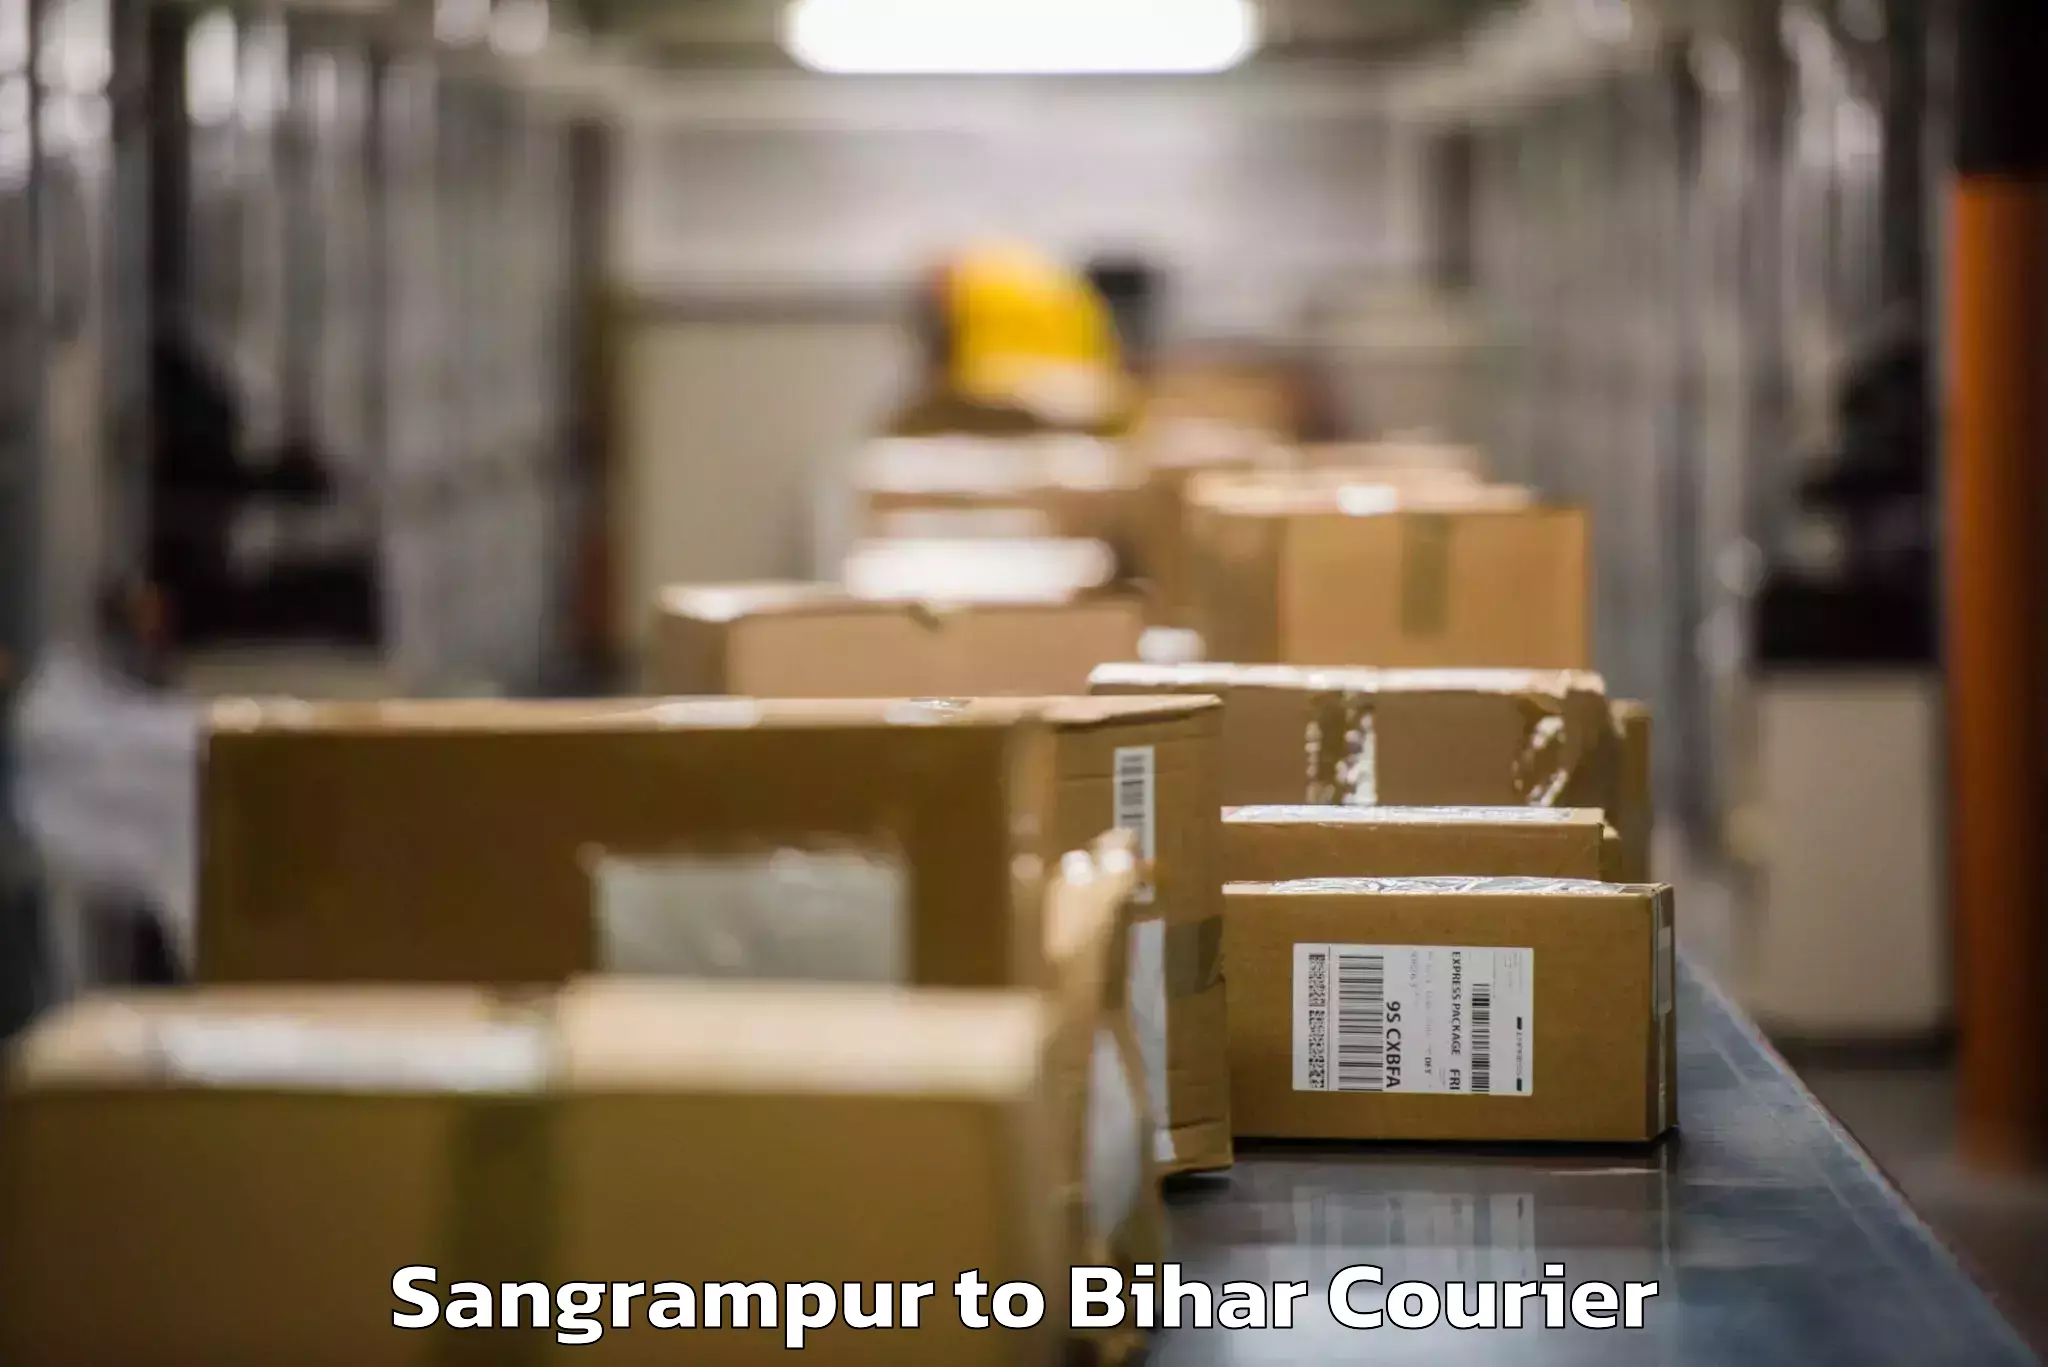 Baggage shipping advice Sangrampur to Alamnagar